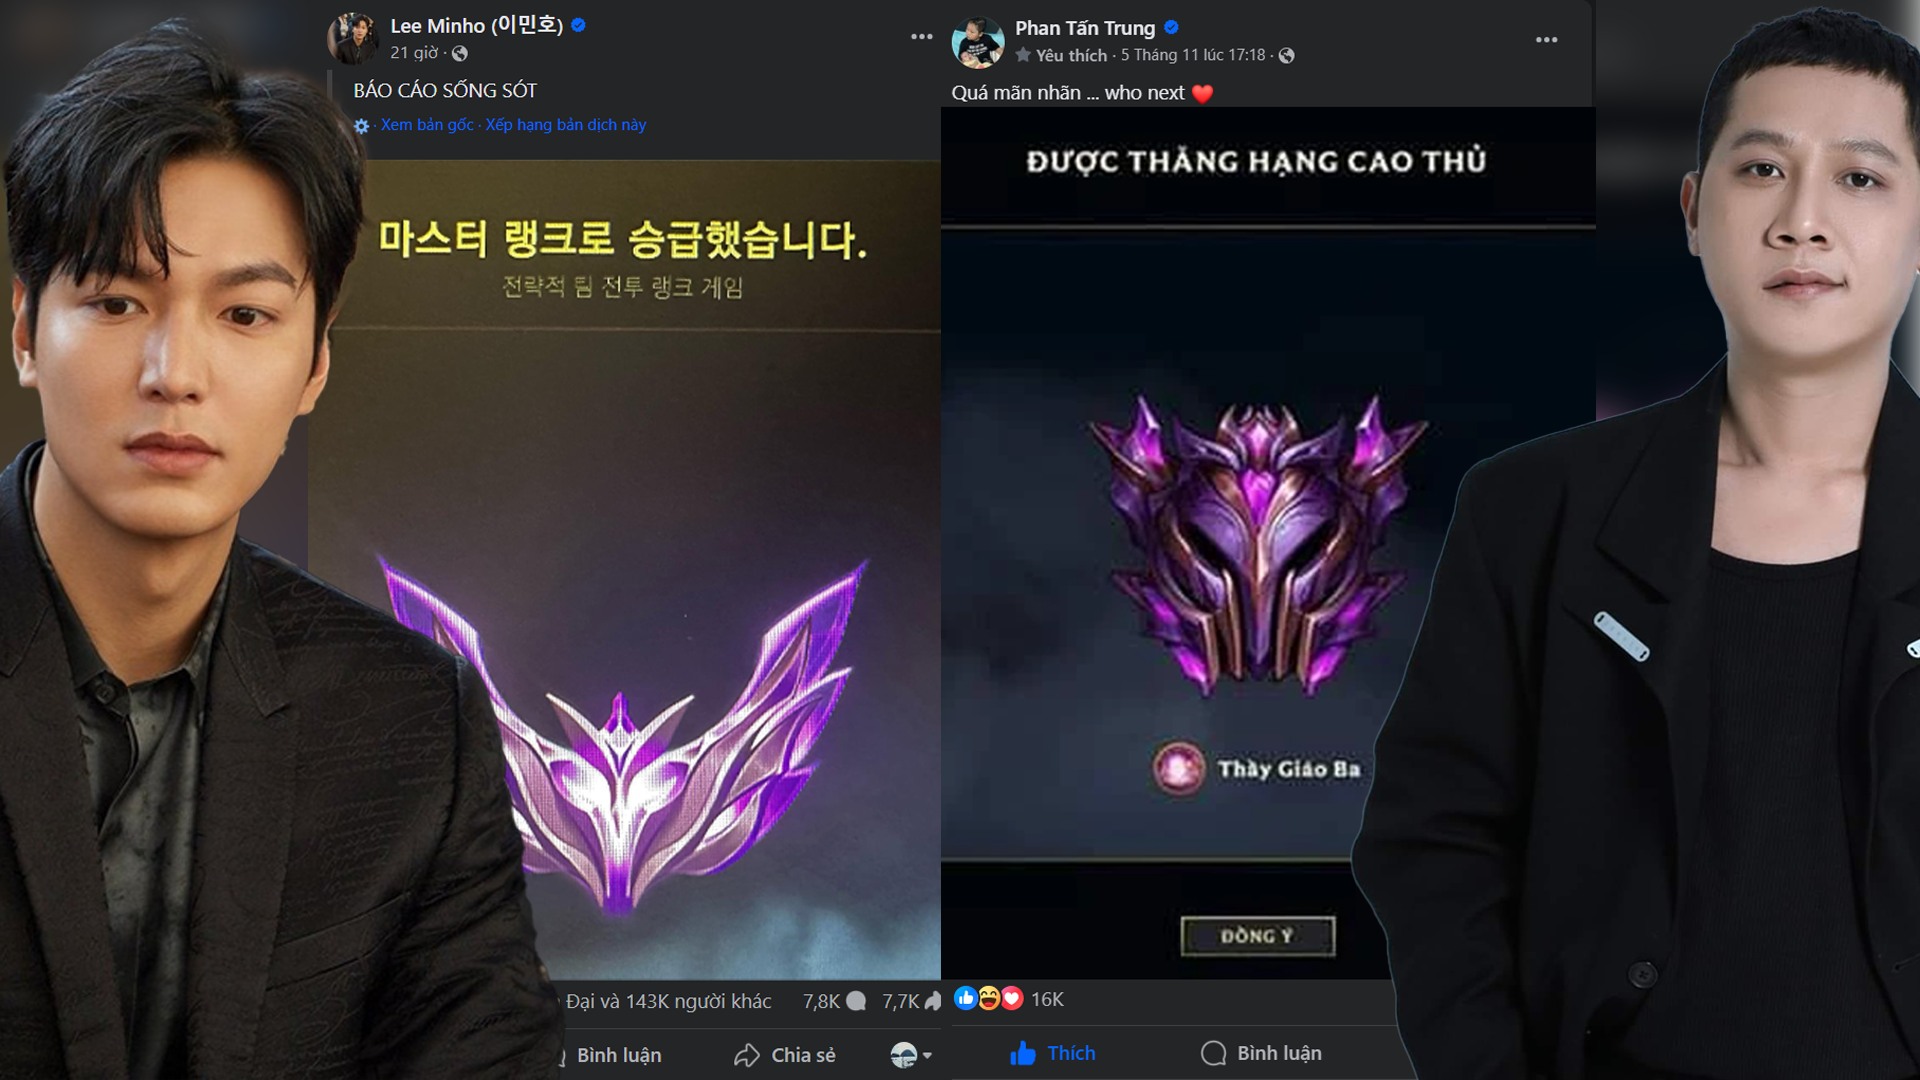 ĐTCL: Lee Min-ho - Tài tử Hàn Quốc tiết lộ rank cao hơn Thầy Giáo Ba khiến fan bất ngờ